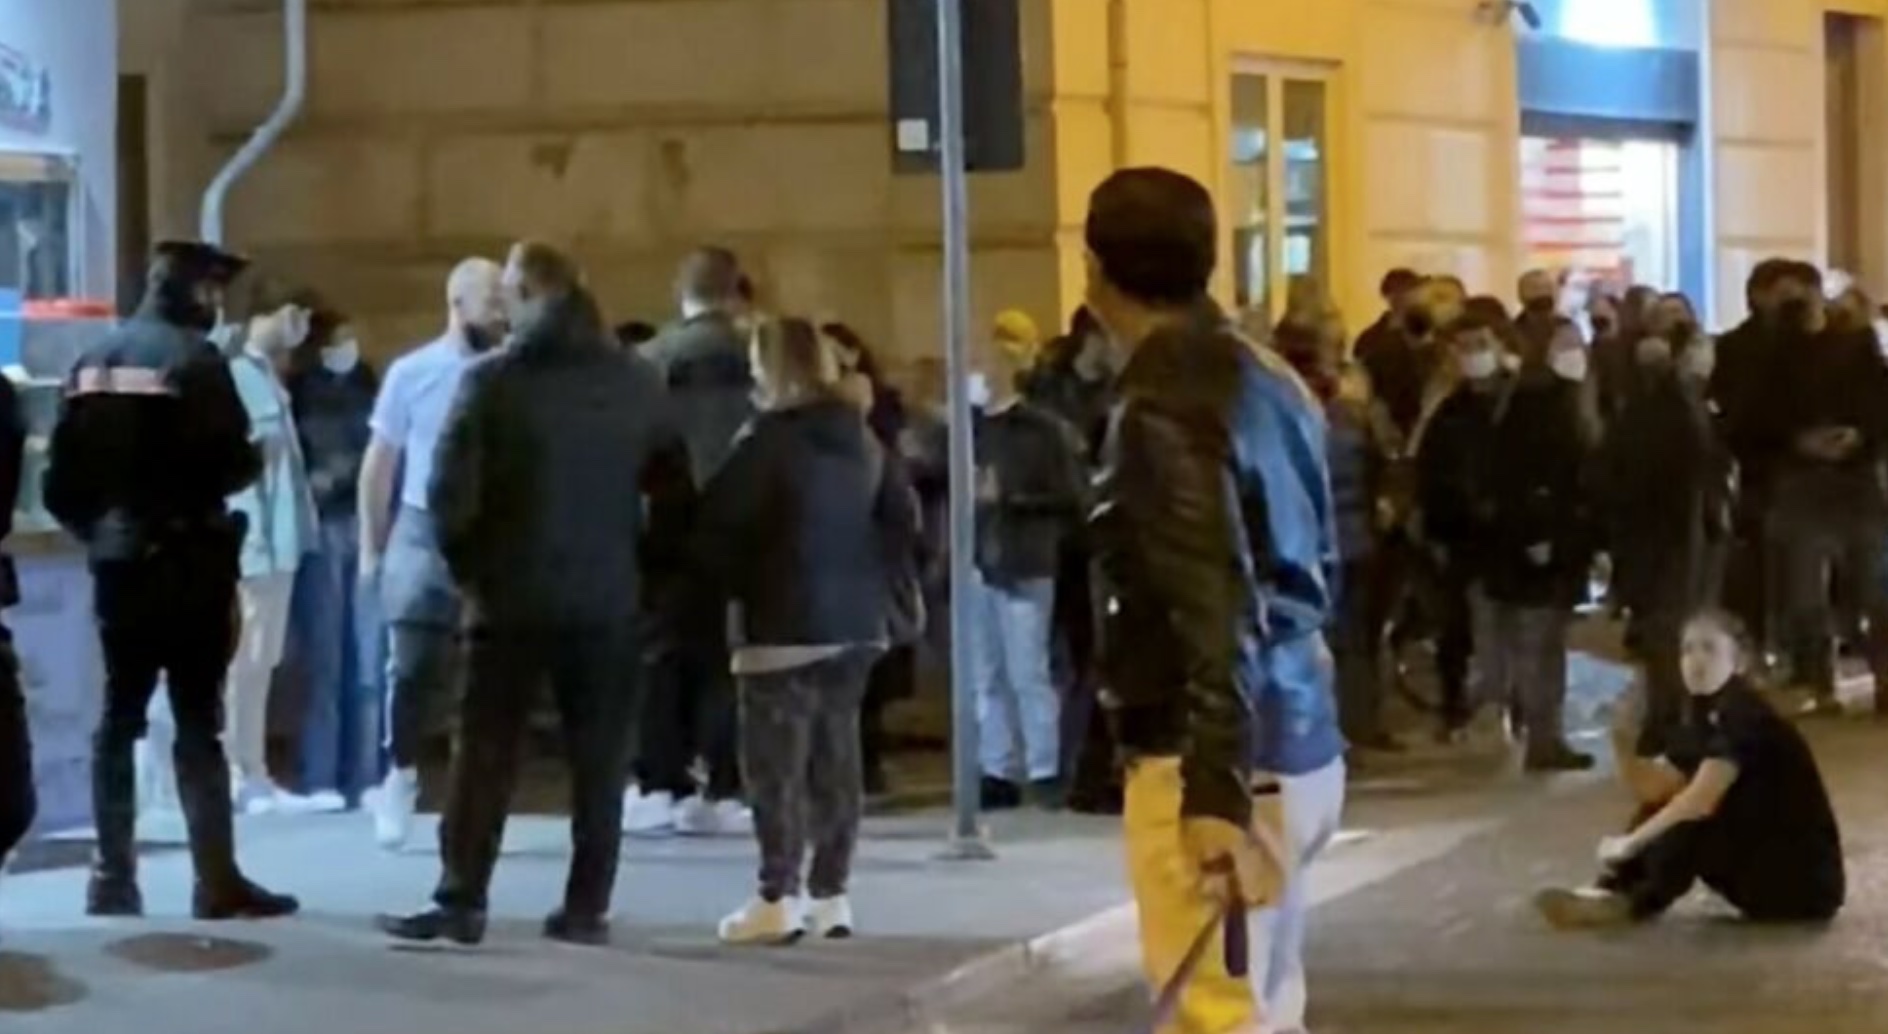 Carabinieri in rosticceria, esplode la rabbia della proprietaria che blocca la strada